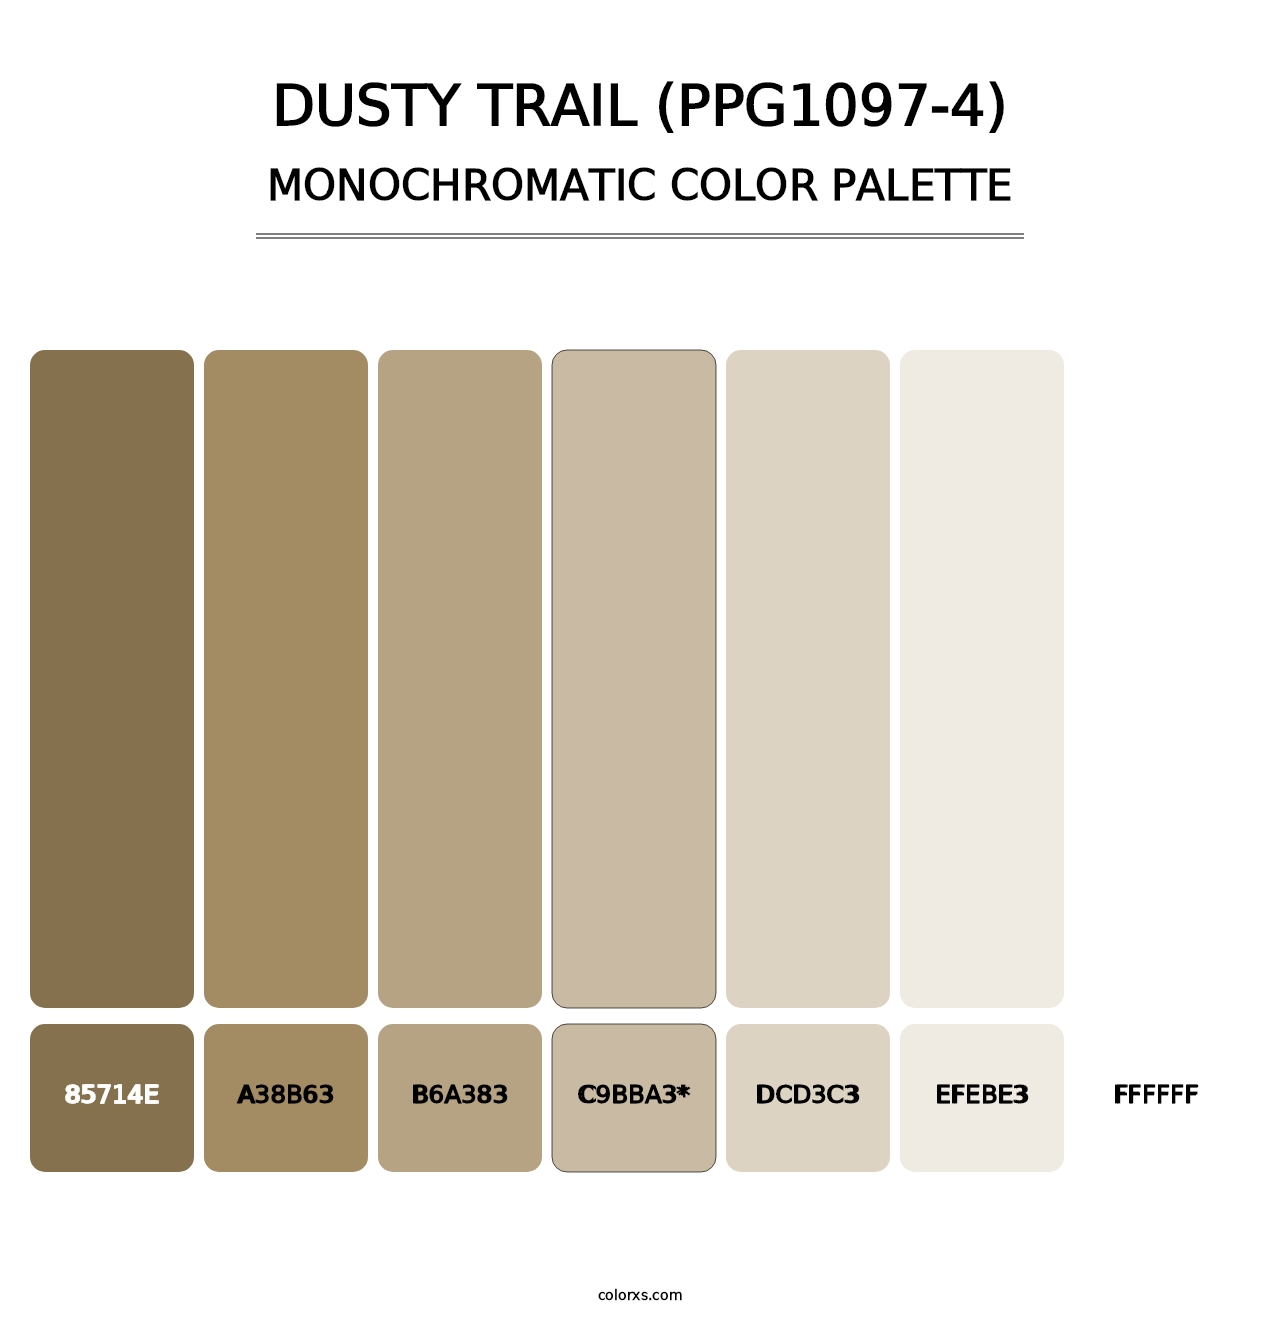 Dusty Trail (PPG1097-4) - Monochromatic Color Palette